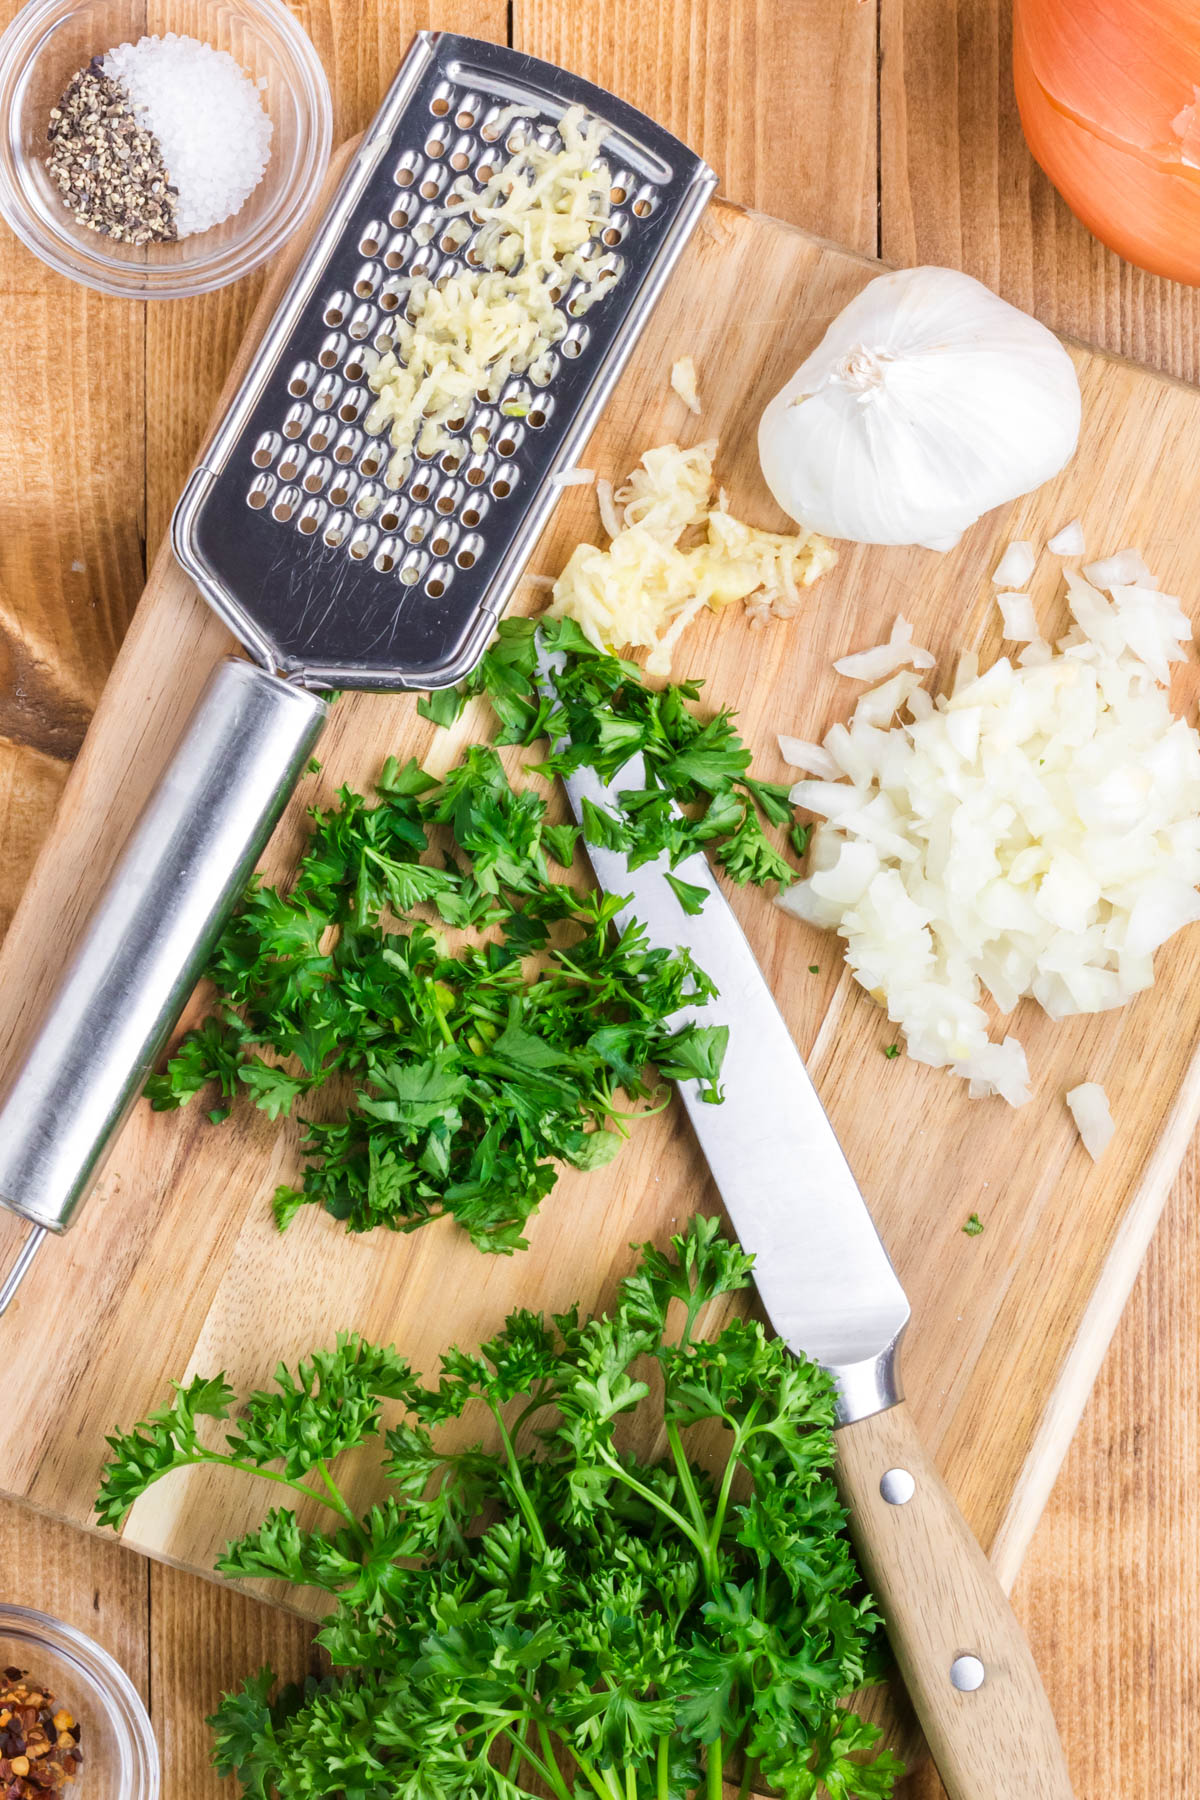 Chopped parsley, minced garlic, and onion on a cutting board.